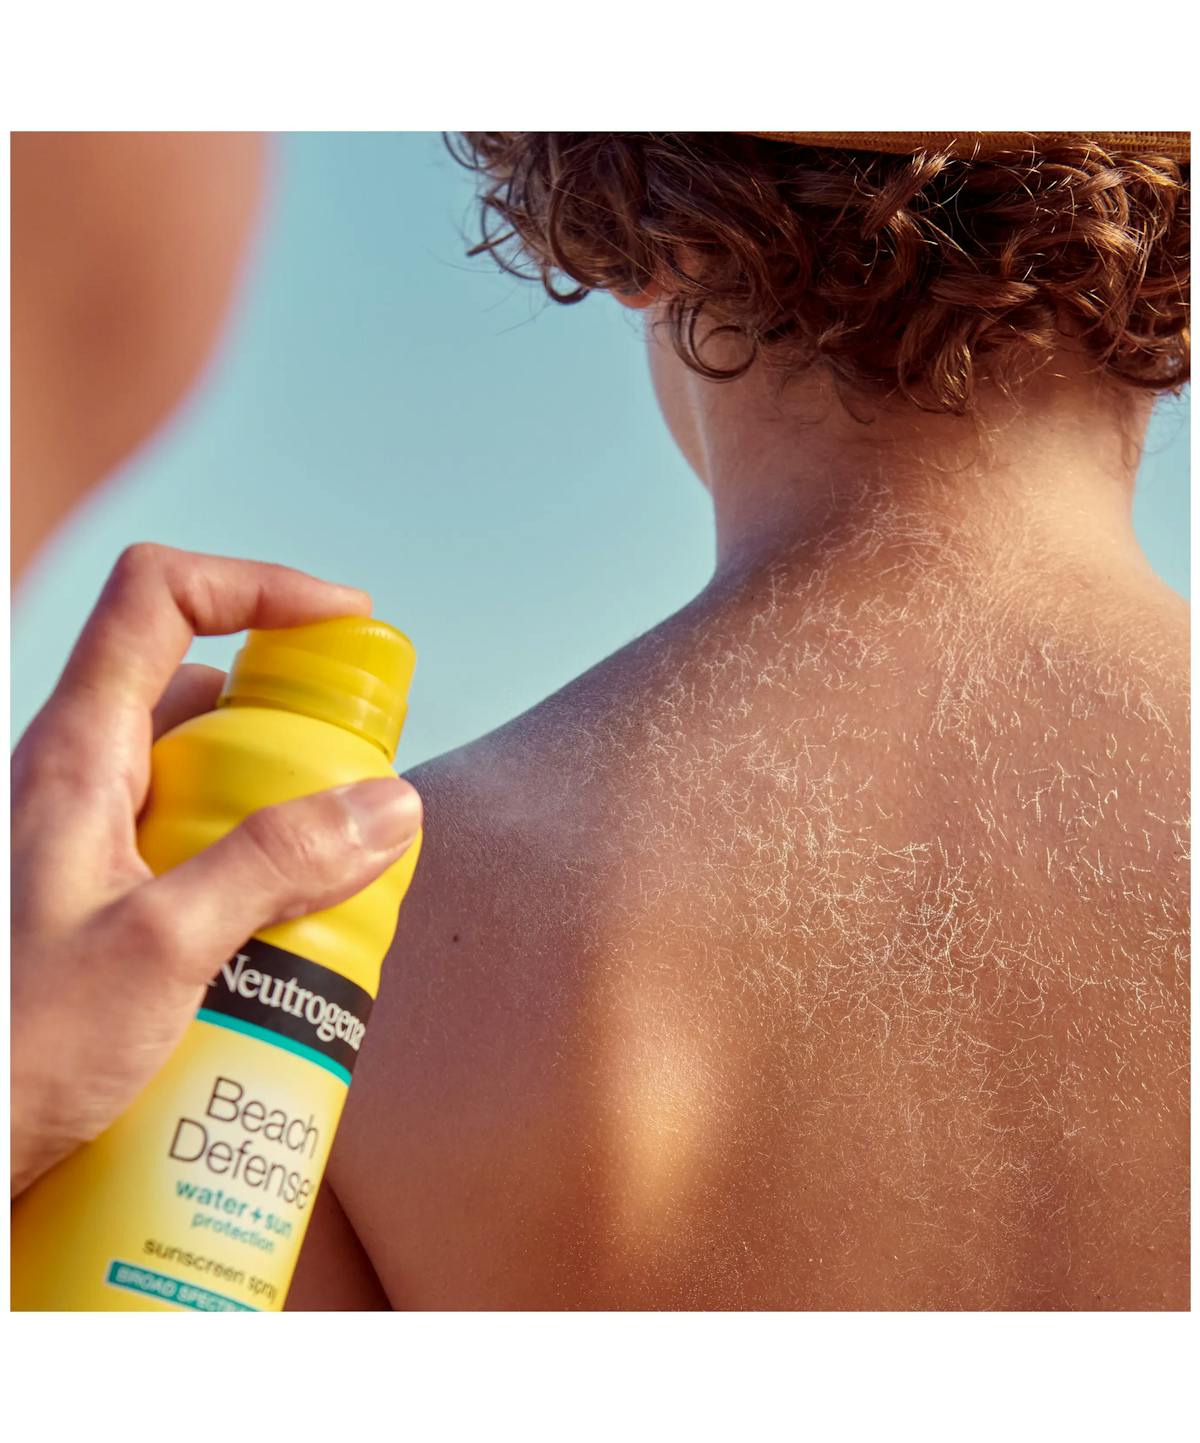 Beach Defense® Spray Sunscreen SPF 70